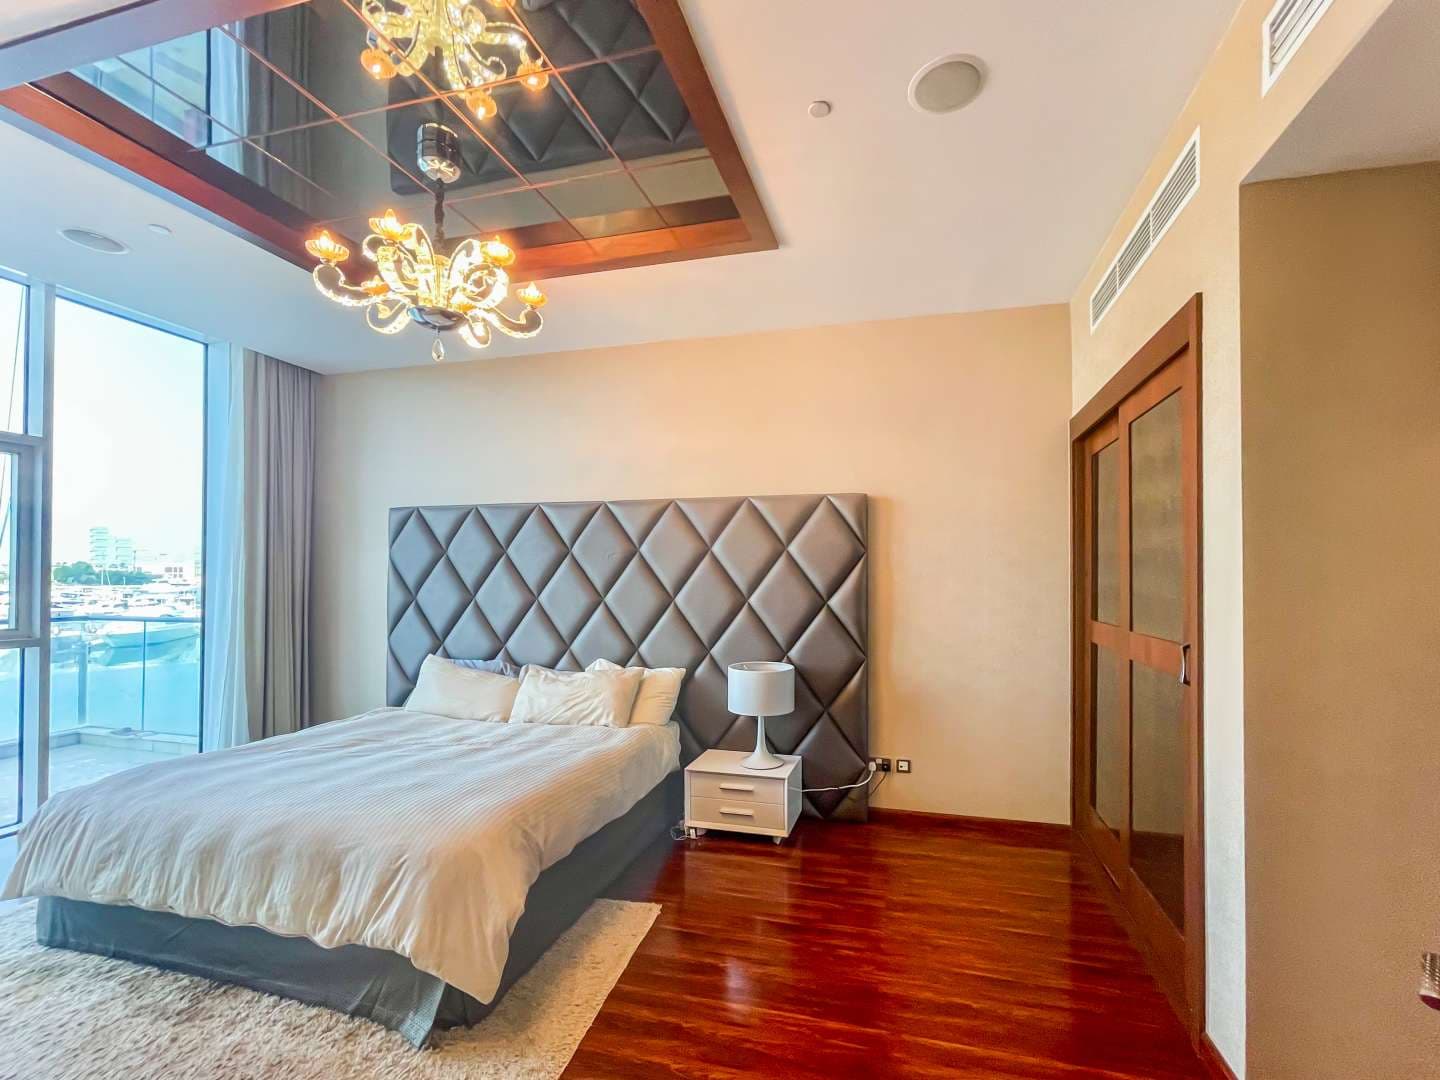 2 Bedroom Apartment For Rent Oceana Pacific Lp10721 672495cd6276880.jpg